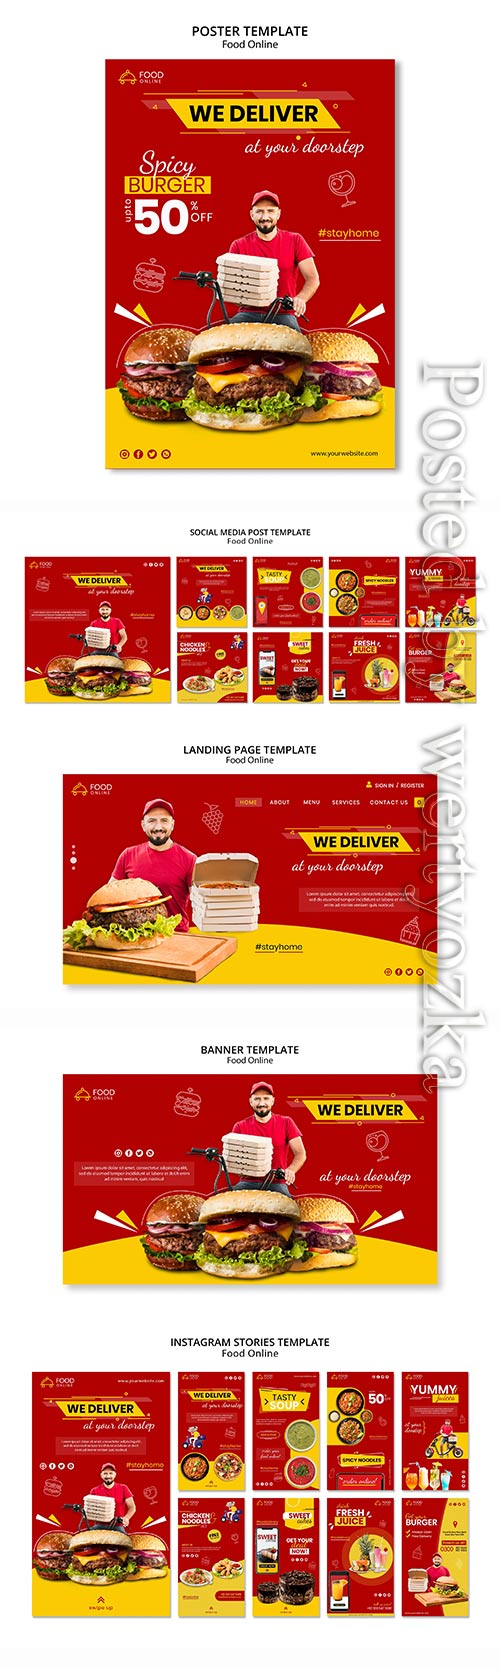 Food online concept banner mock-up